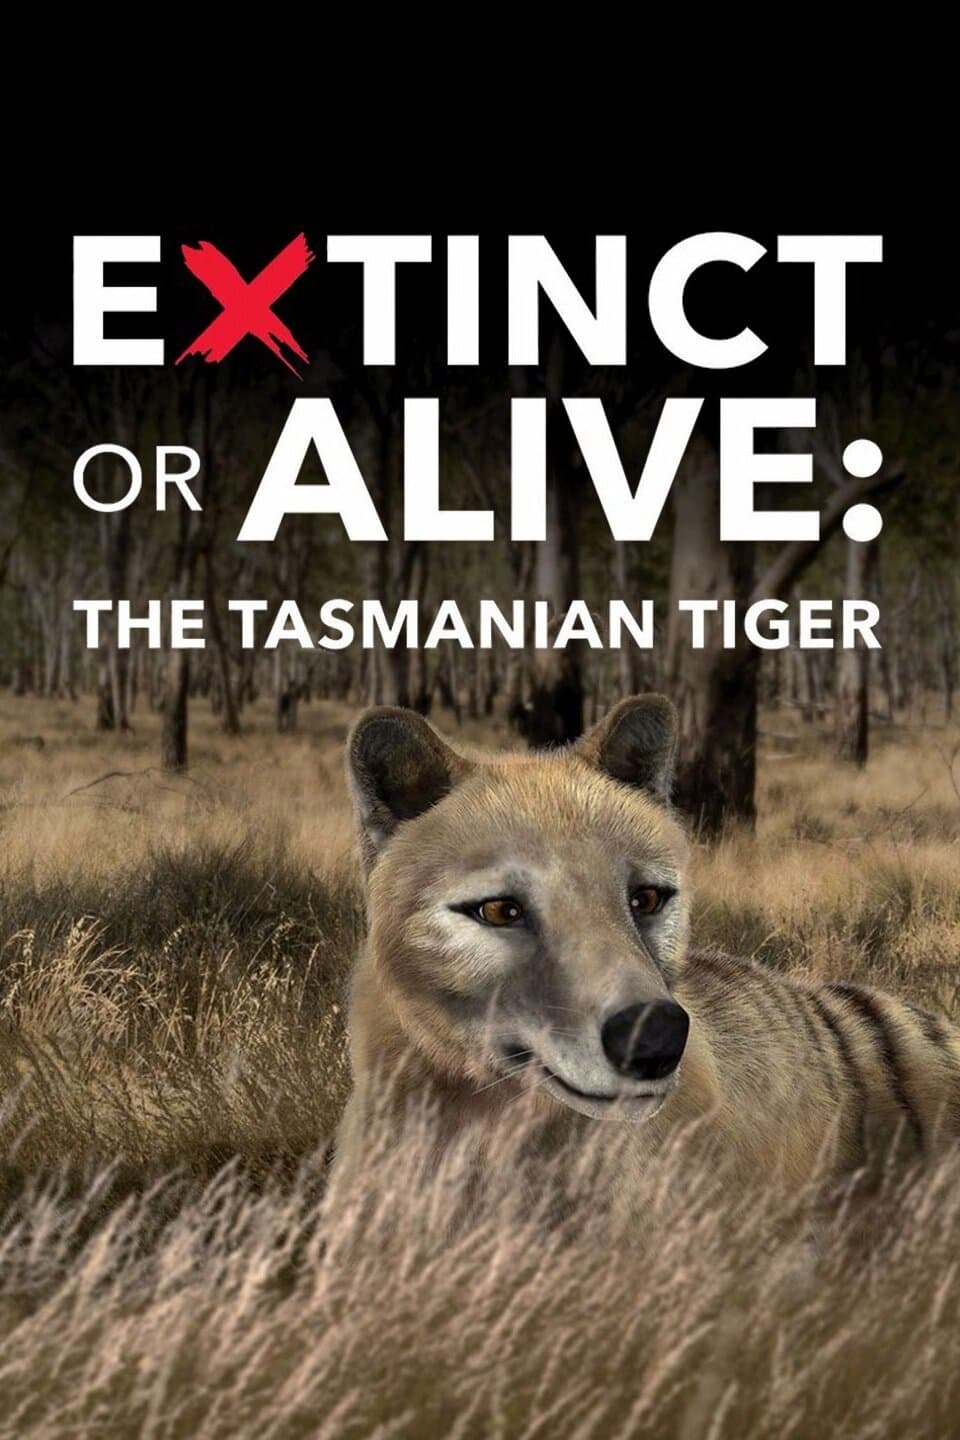 Extinct or Alive: Tasmanian Tiger